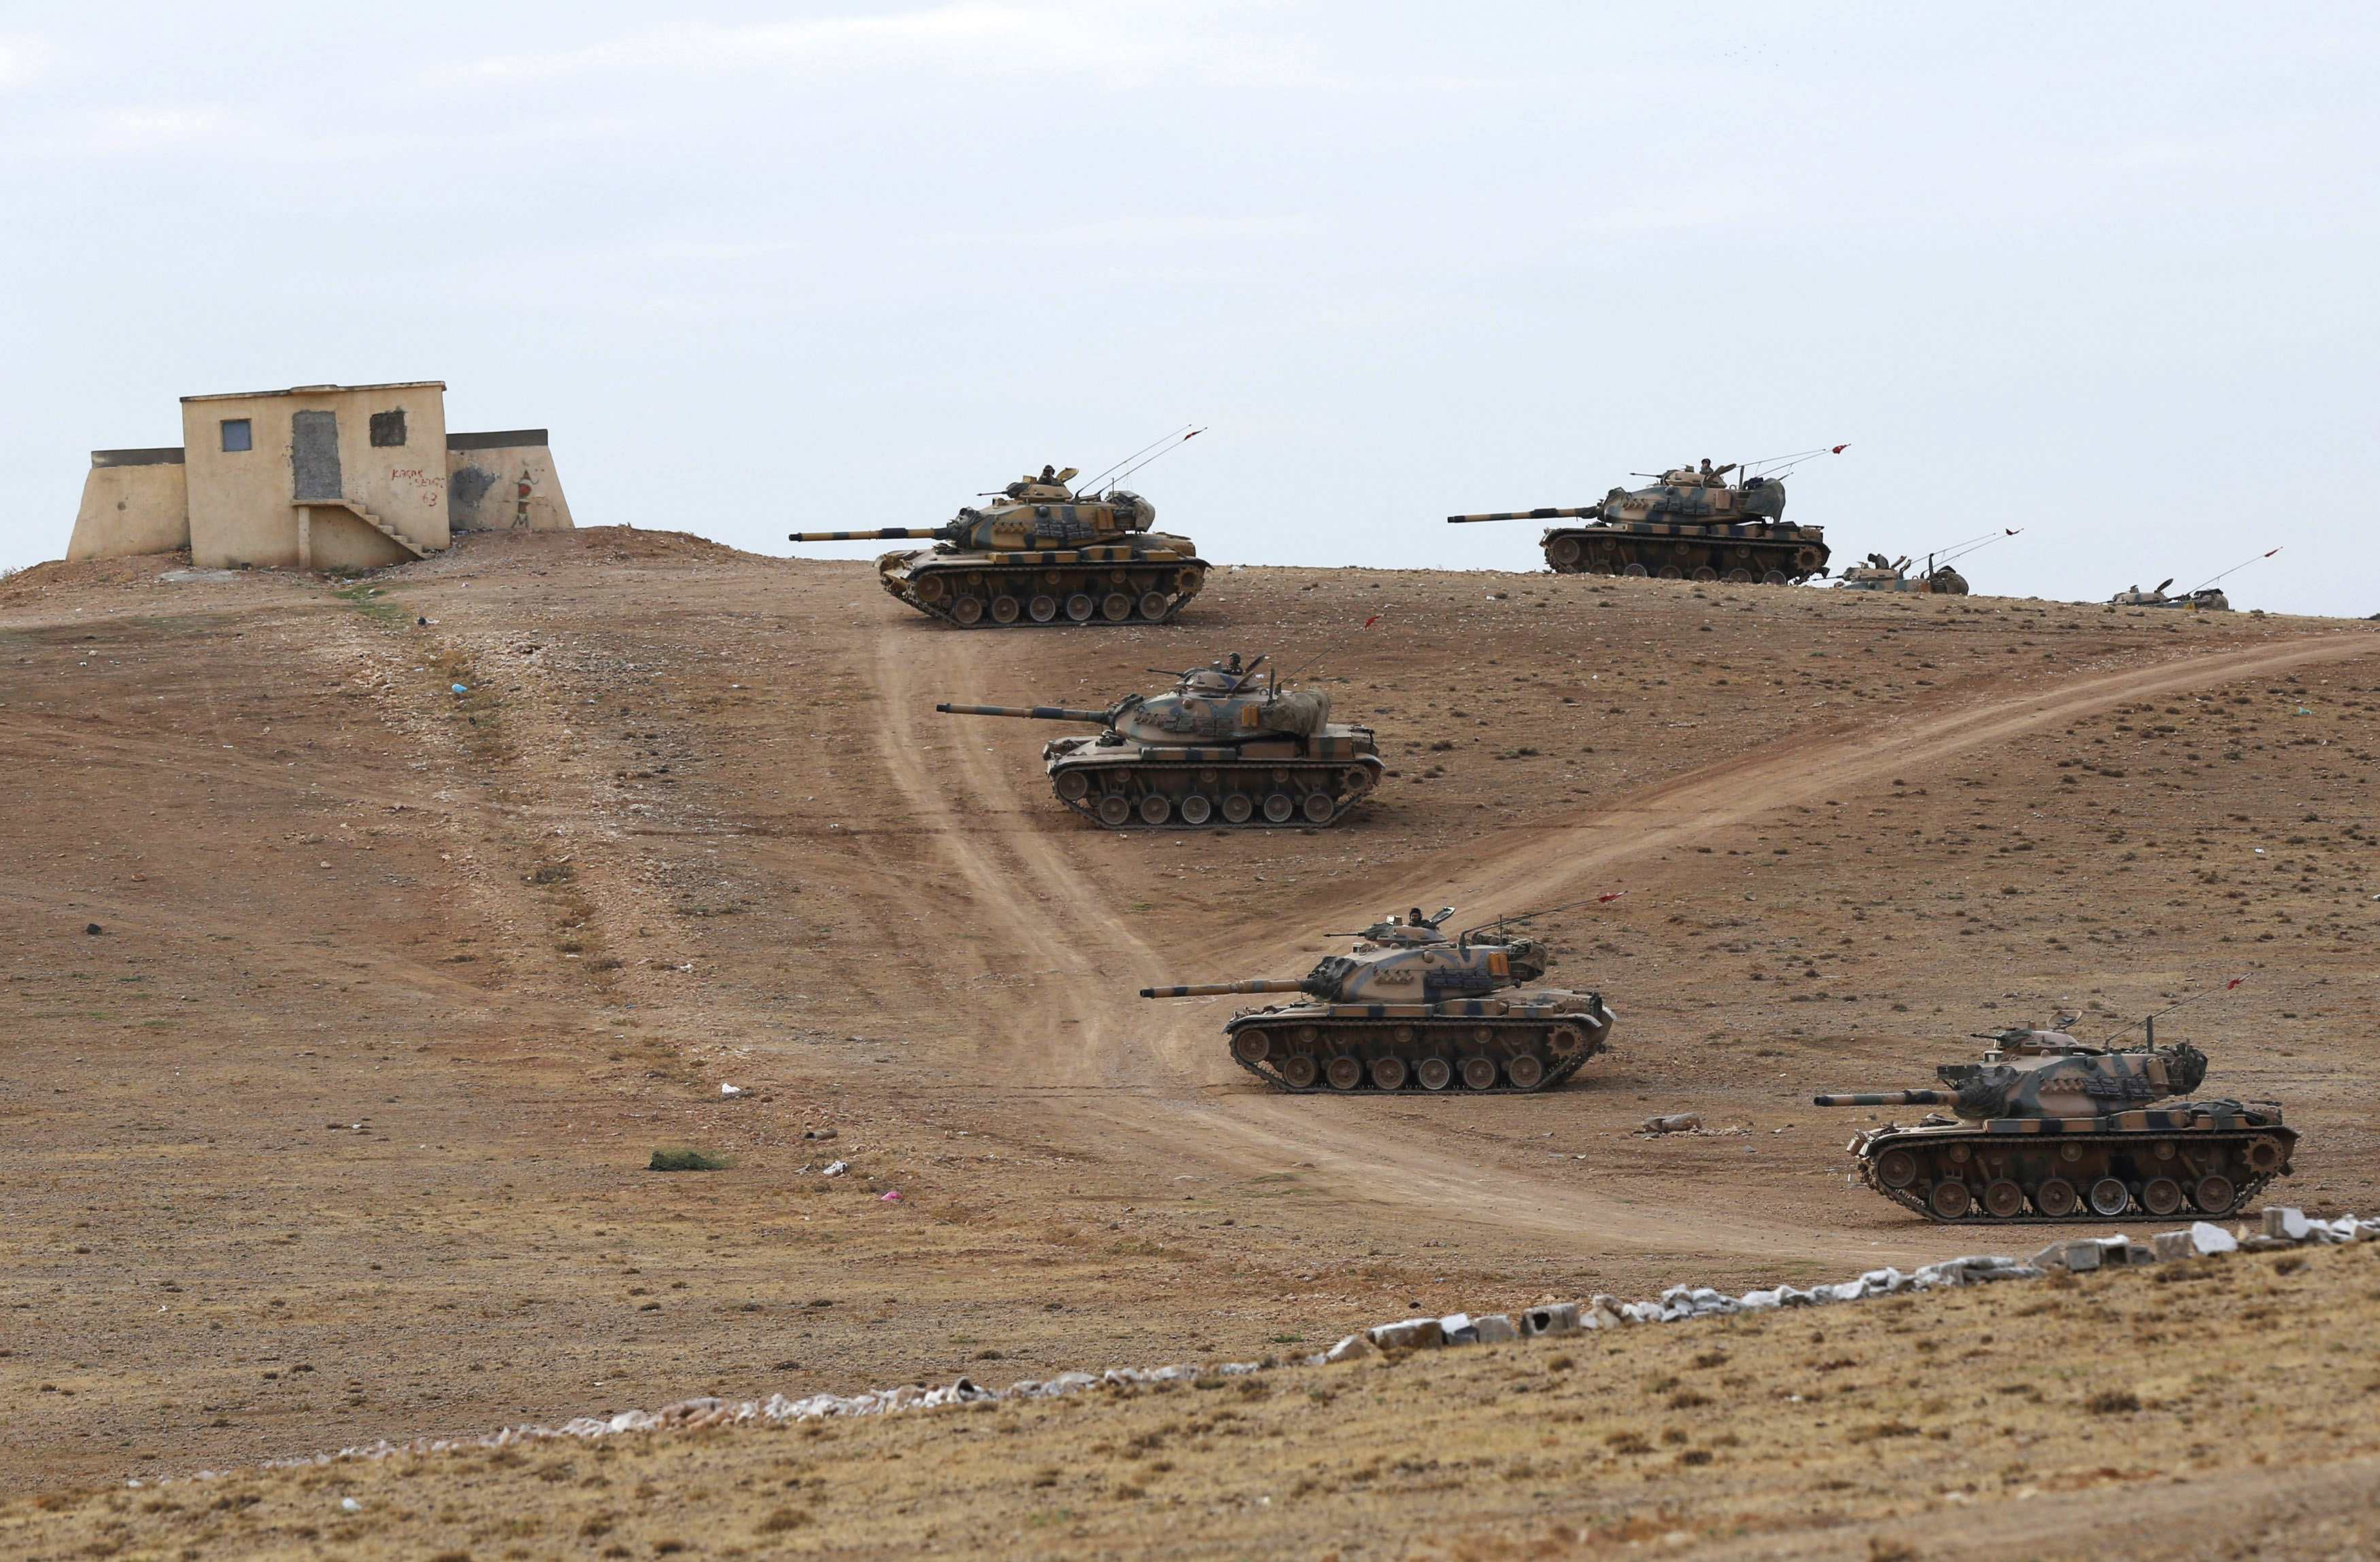 Újabb török tankok léptek Szíria területére